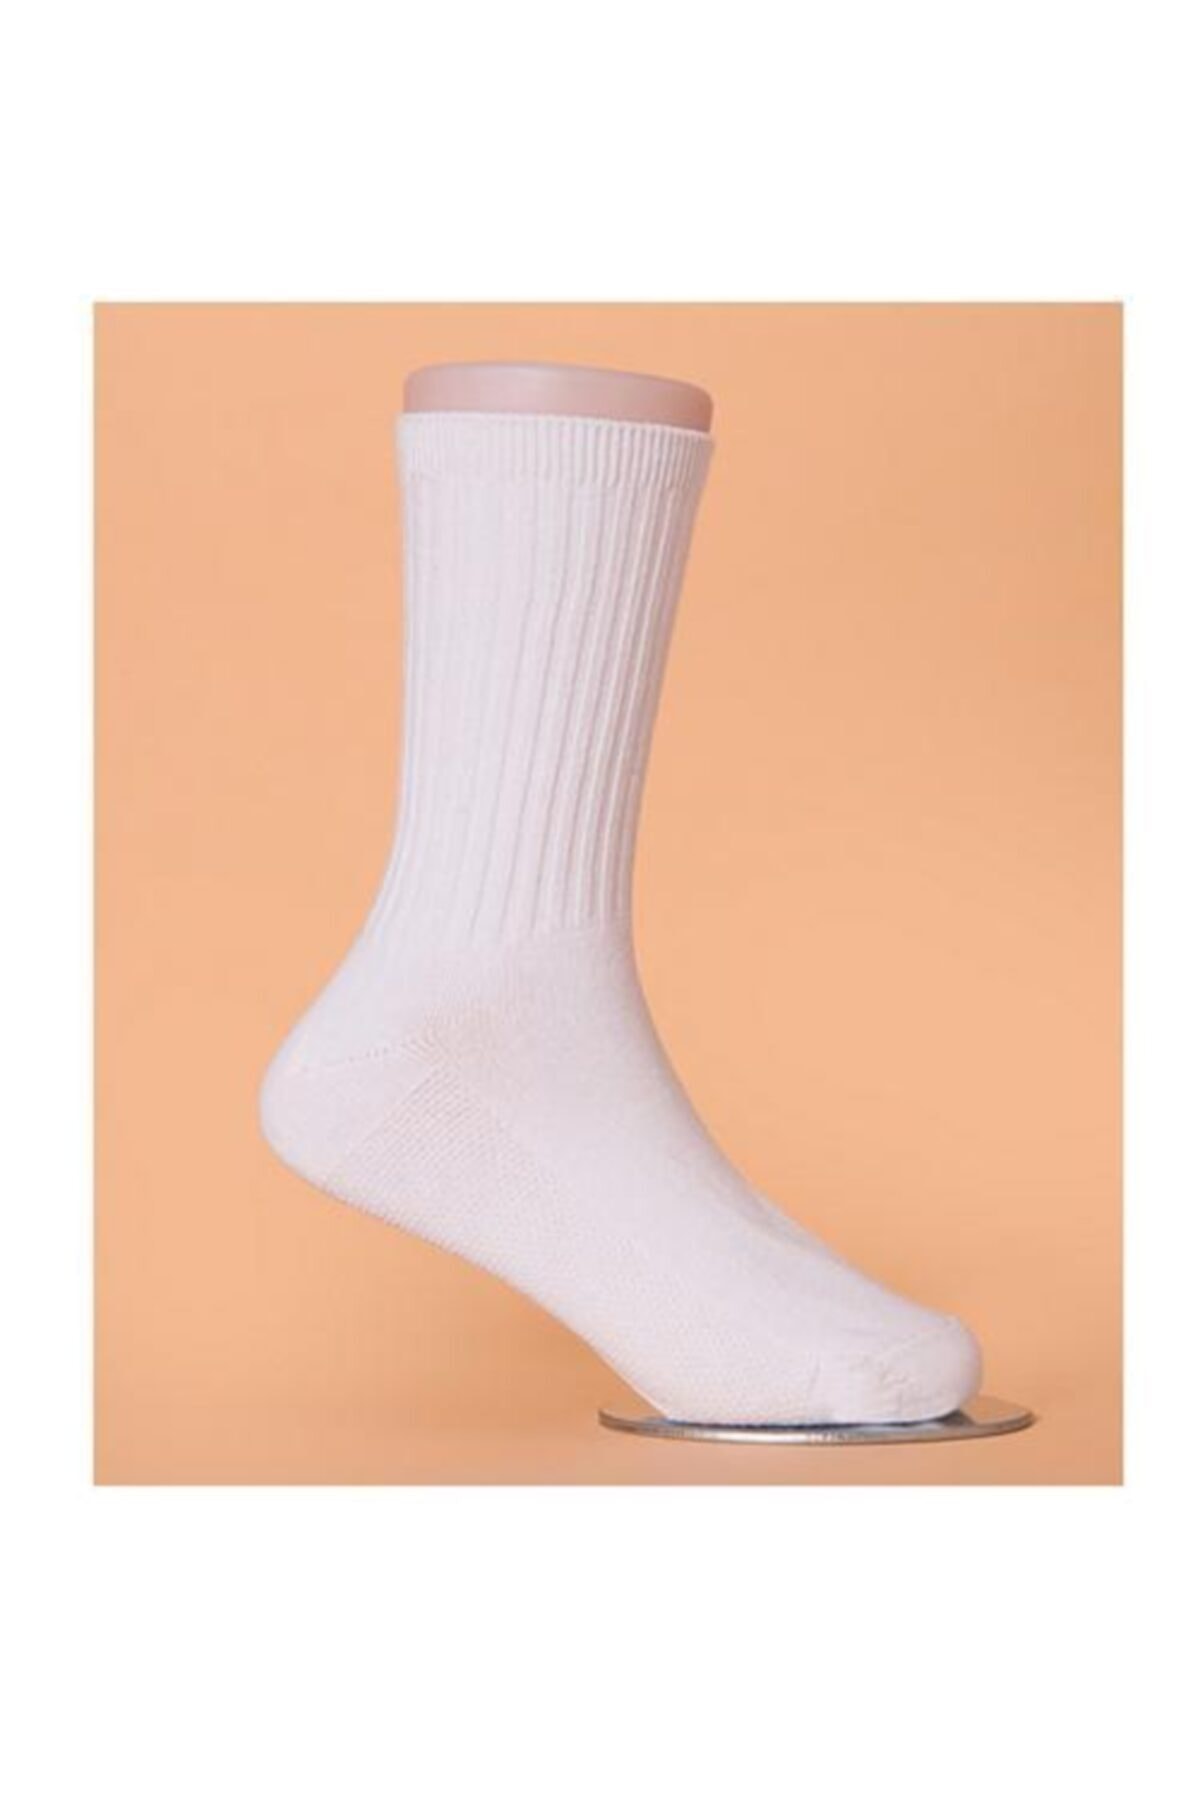 SRS CENTER Unisex Beyaz 4 Lü Halı Saha Günlük Giyim Antrenman Terletmez Spor Çorap